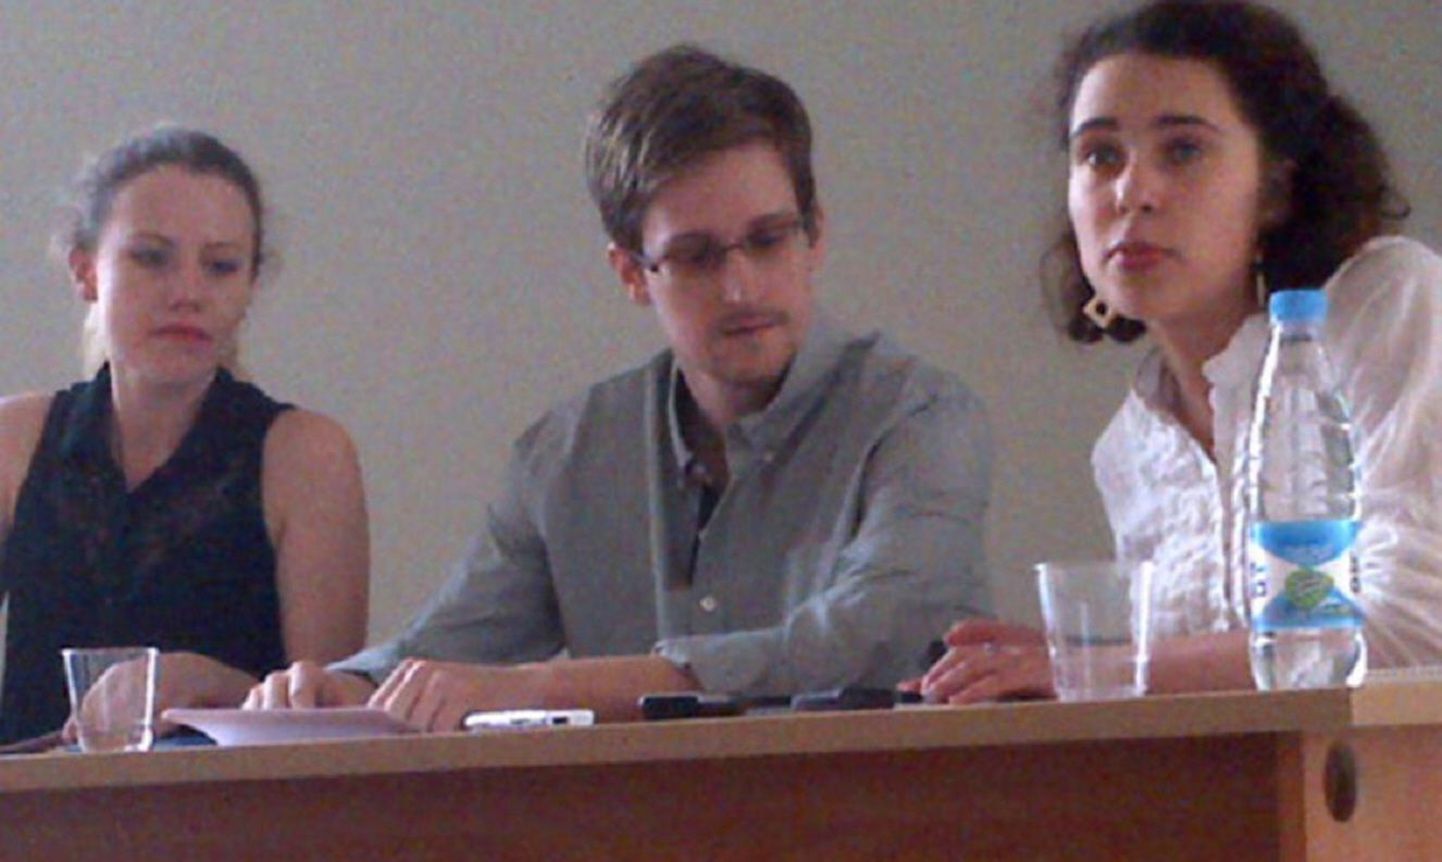 Edward Snowden möödunud reedel Šeremetjevo lennujaamas inimõiguslastega pressikonverentsi andmas.